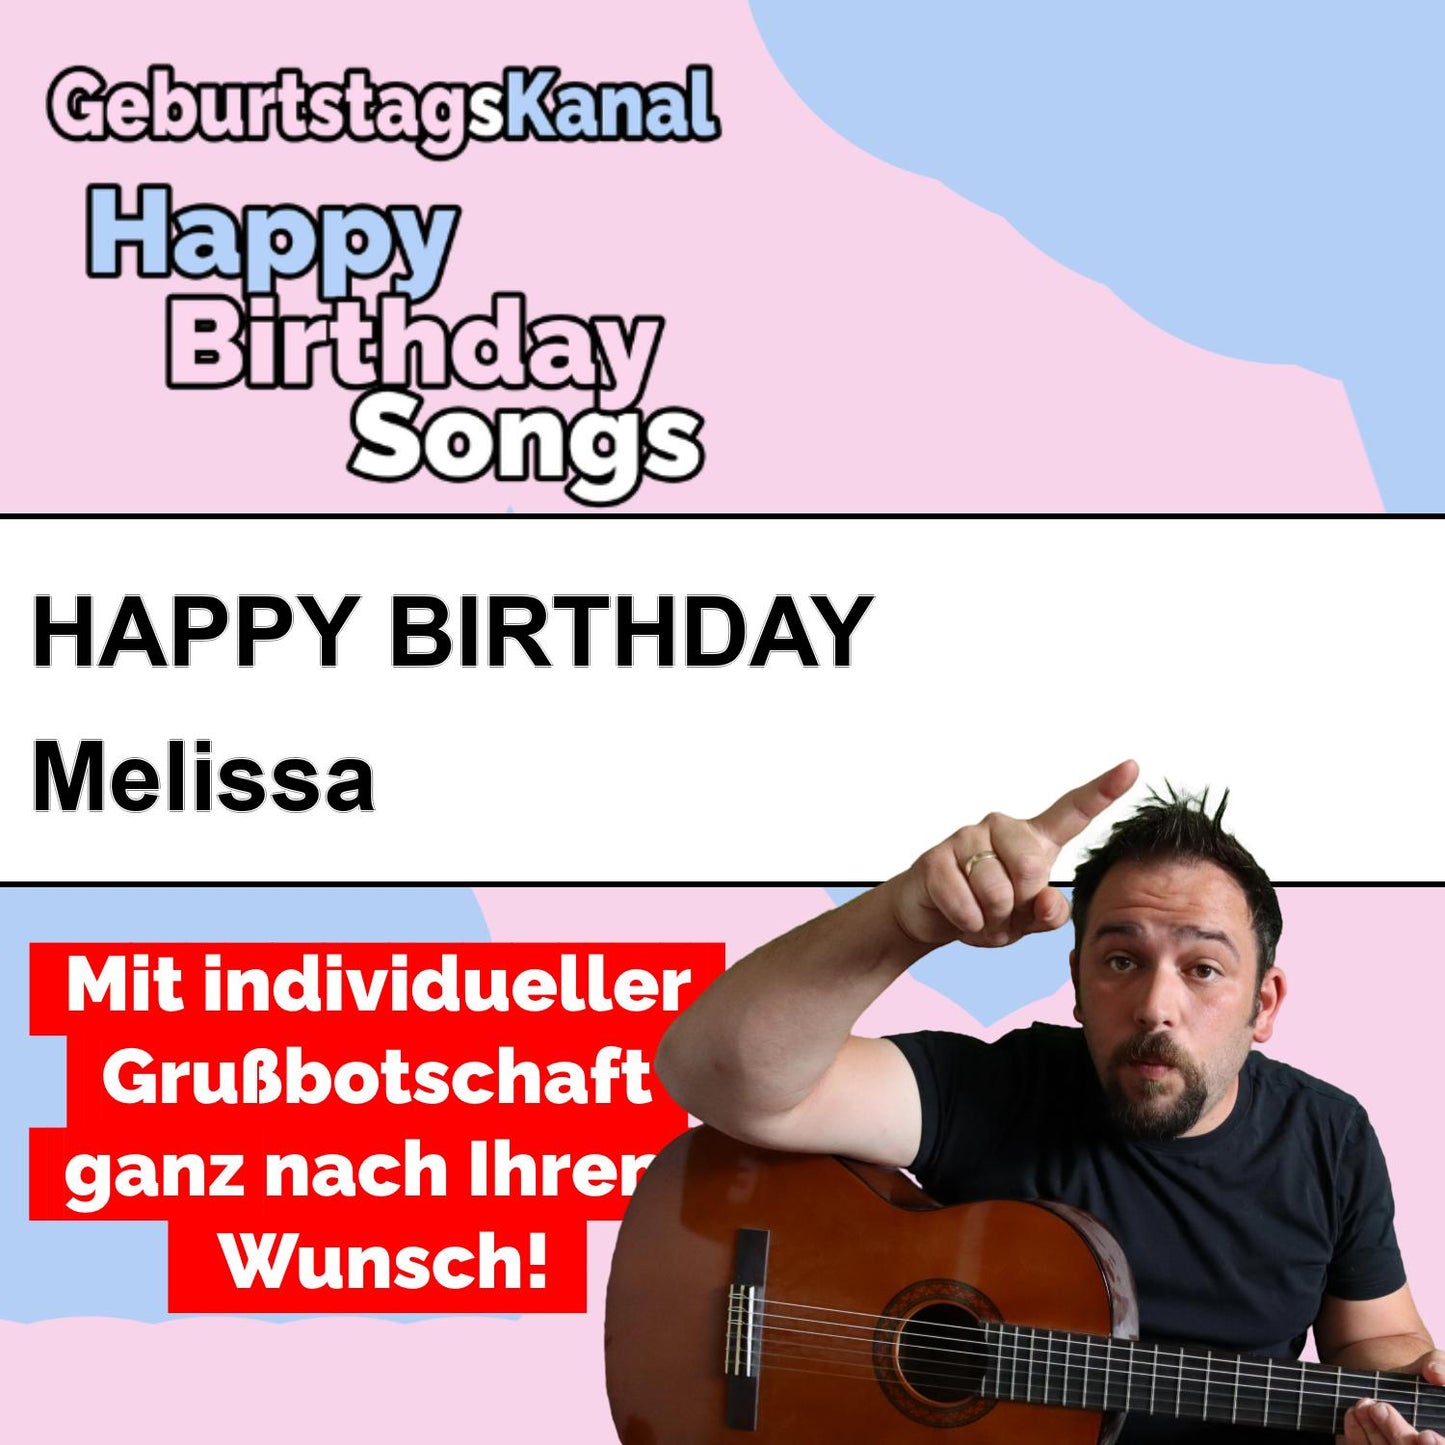 Produktbild Happy Birthday to you Melissa mit Wunschgrußbotschaft